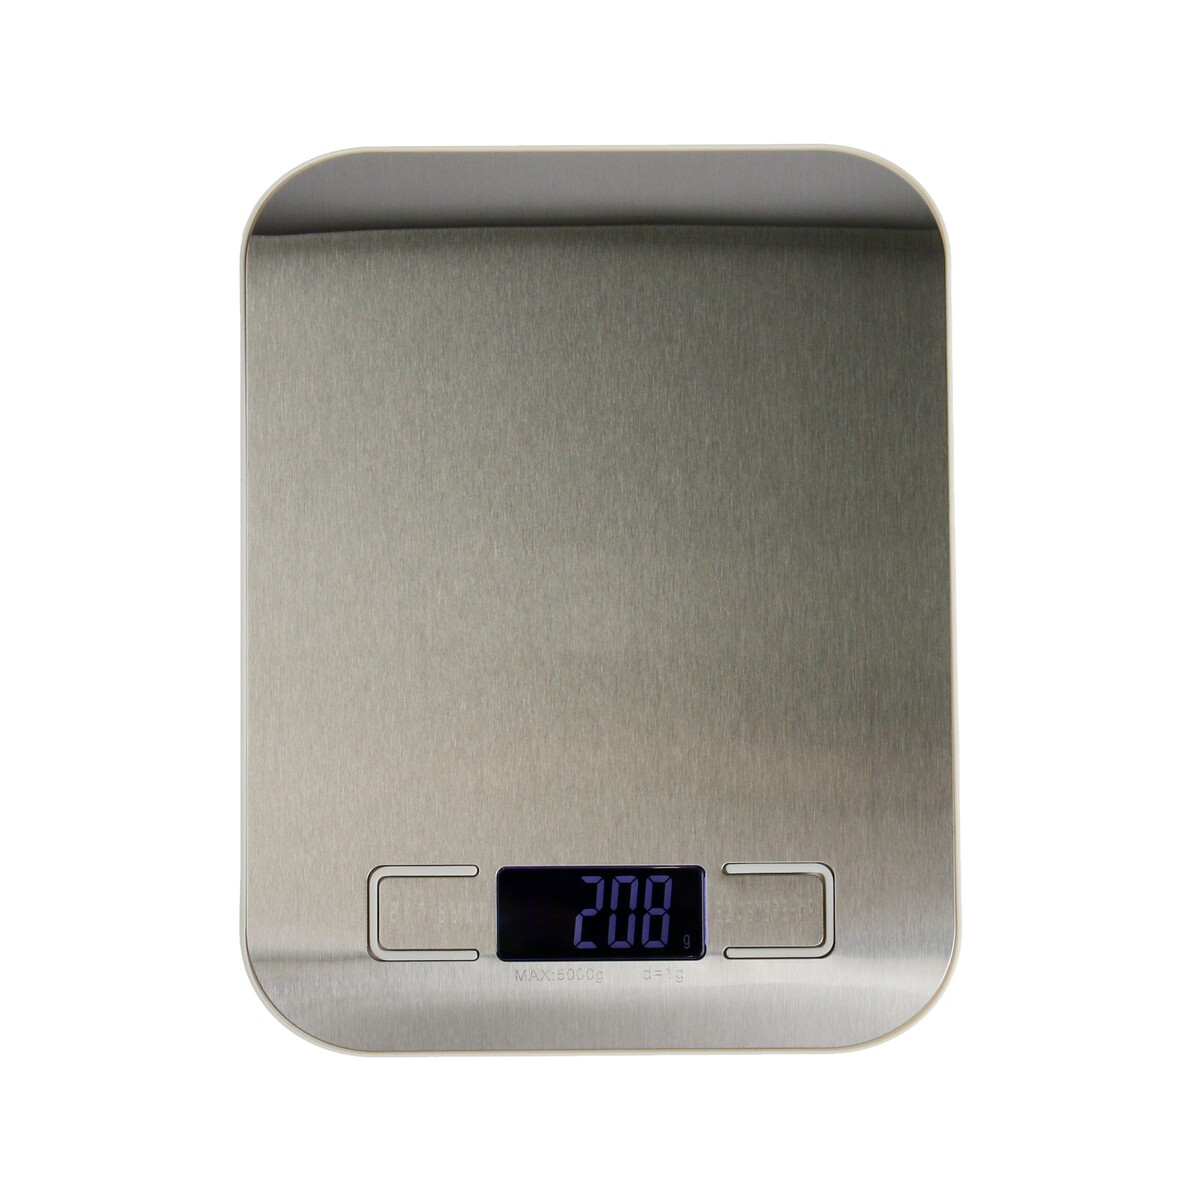 Весы кухонные luazon lve-028, электронные, до 5 кг, металл весы кухонные электронные beurer ks19 berry макс вес 5кг рисунок